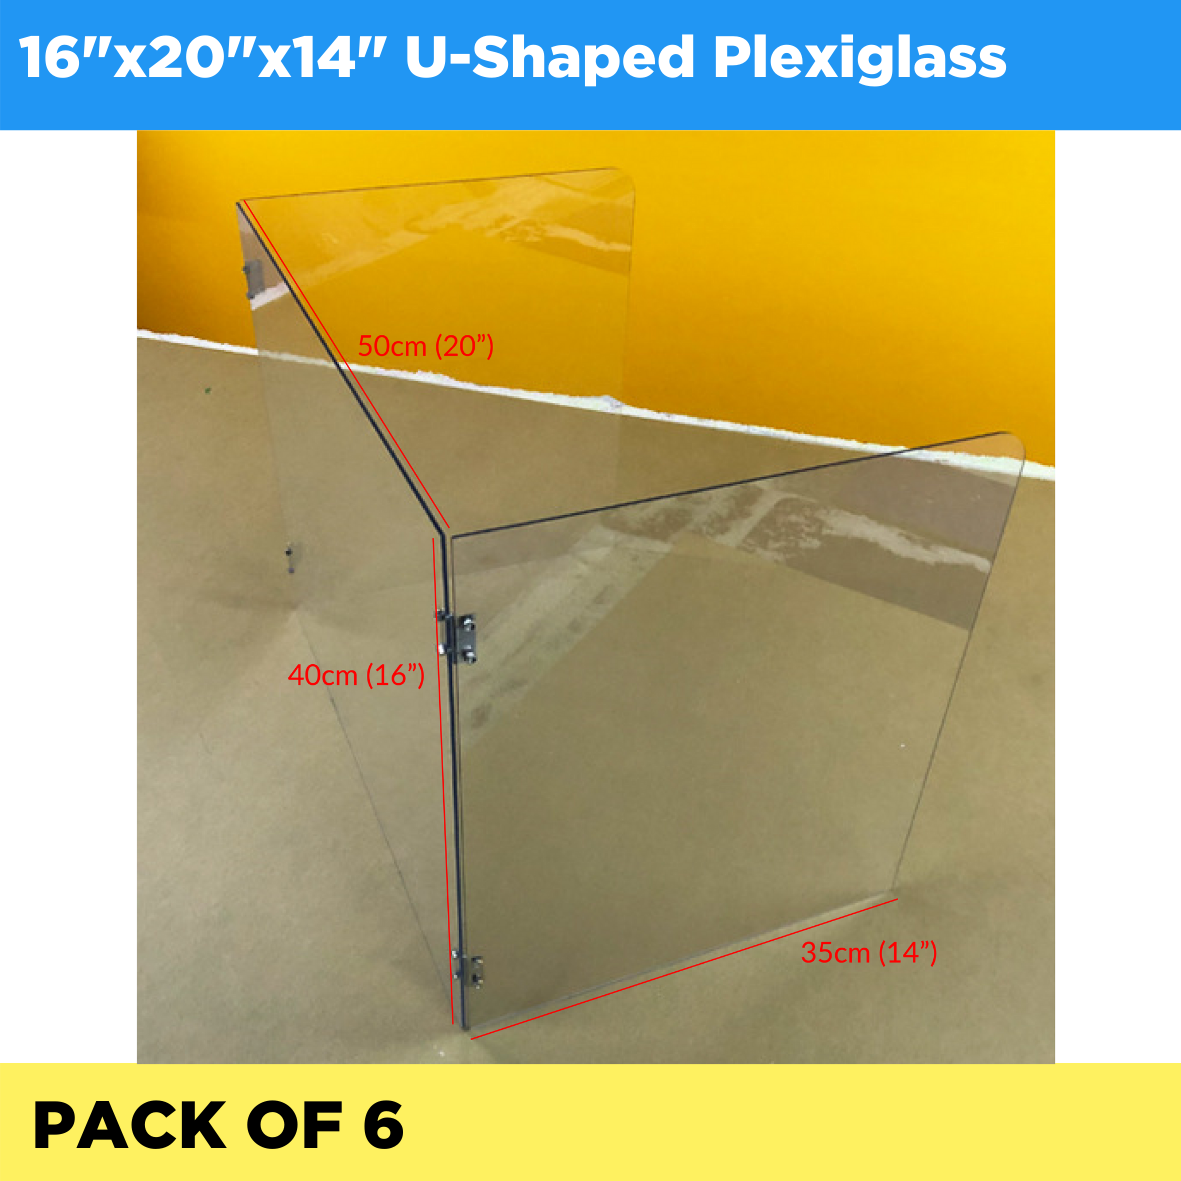 Plexiglass U-Shaped 16"x20"x14" - Pack of 6 (Listing ID: 6617449857093)